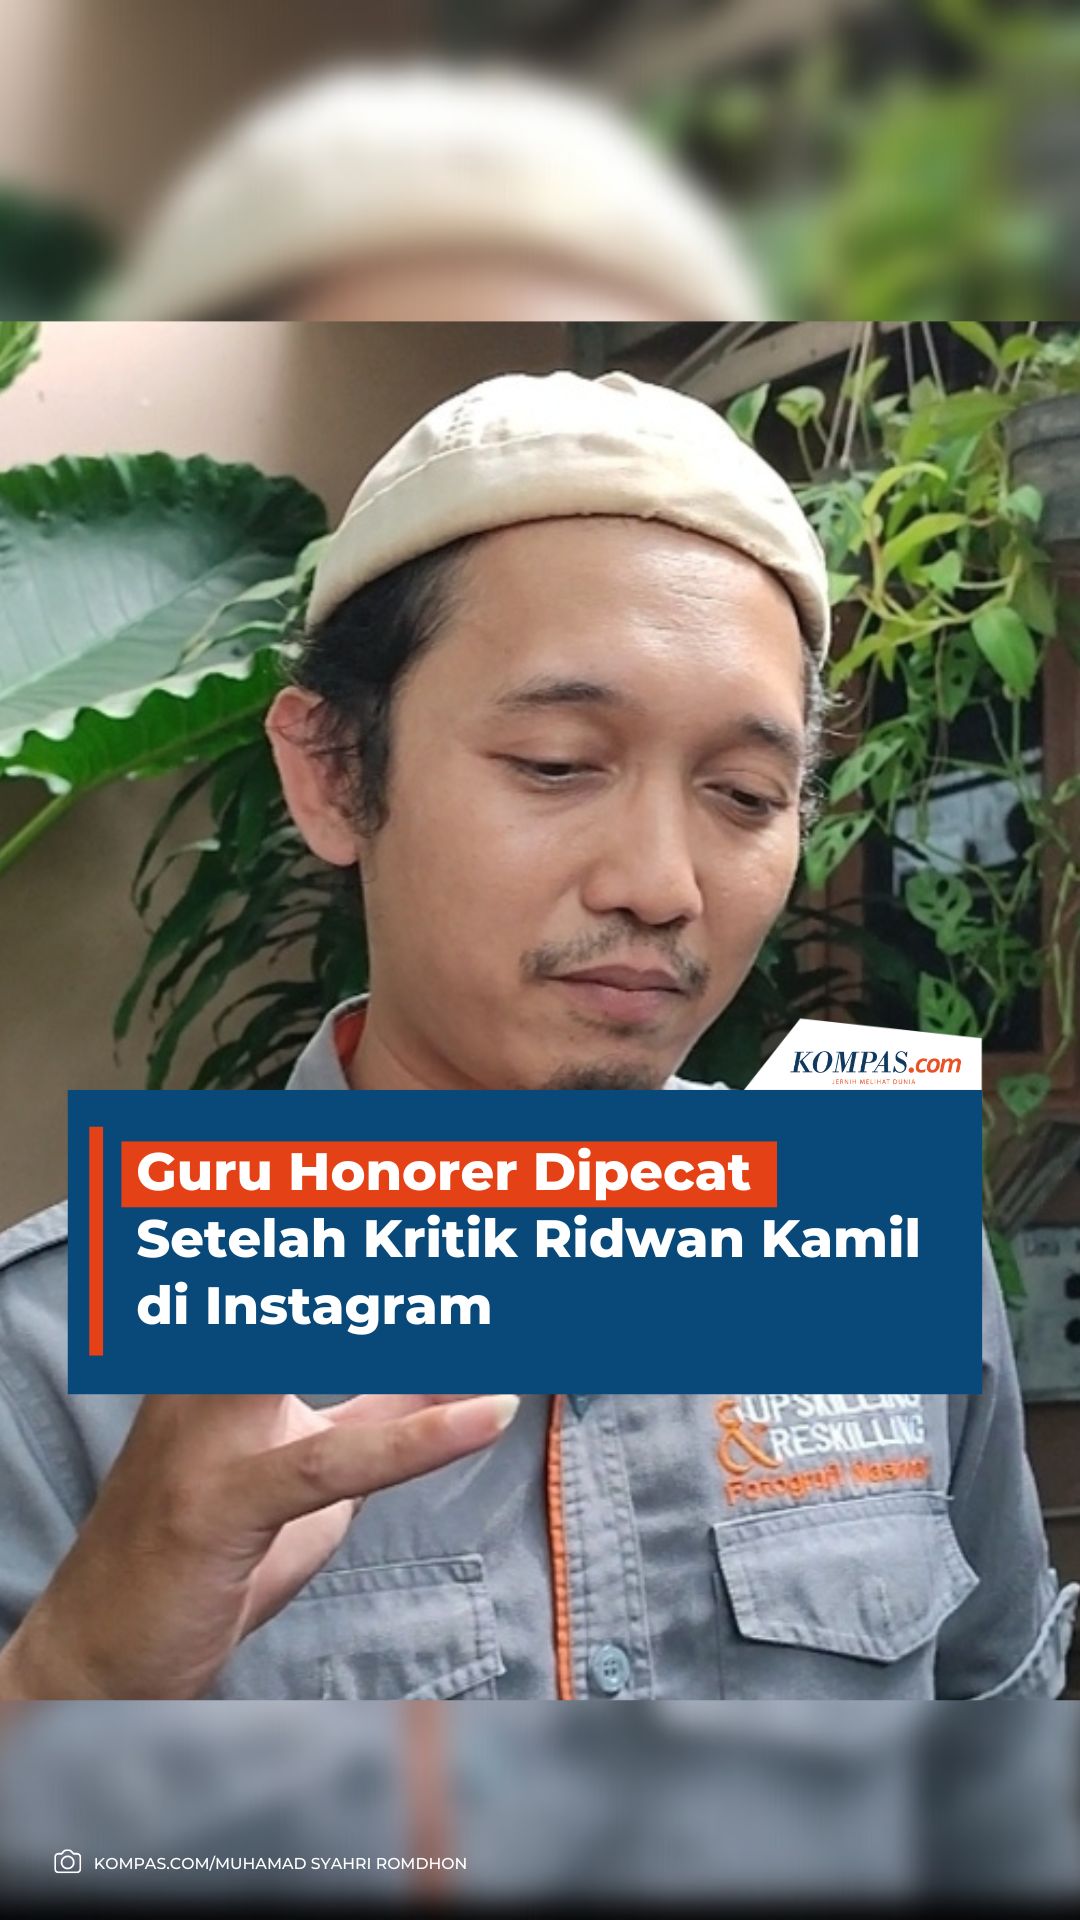 Guru Honorer Dipecat Setelah Kritik Ridwan Kamil di Instagram